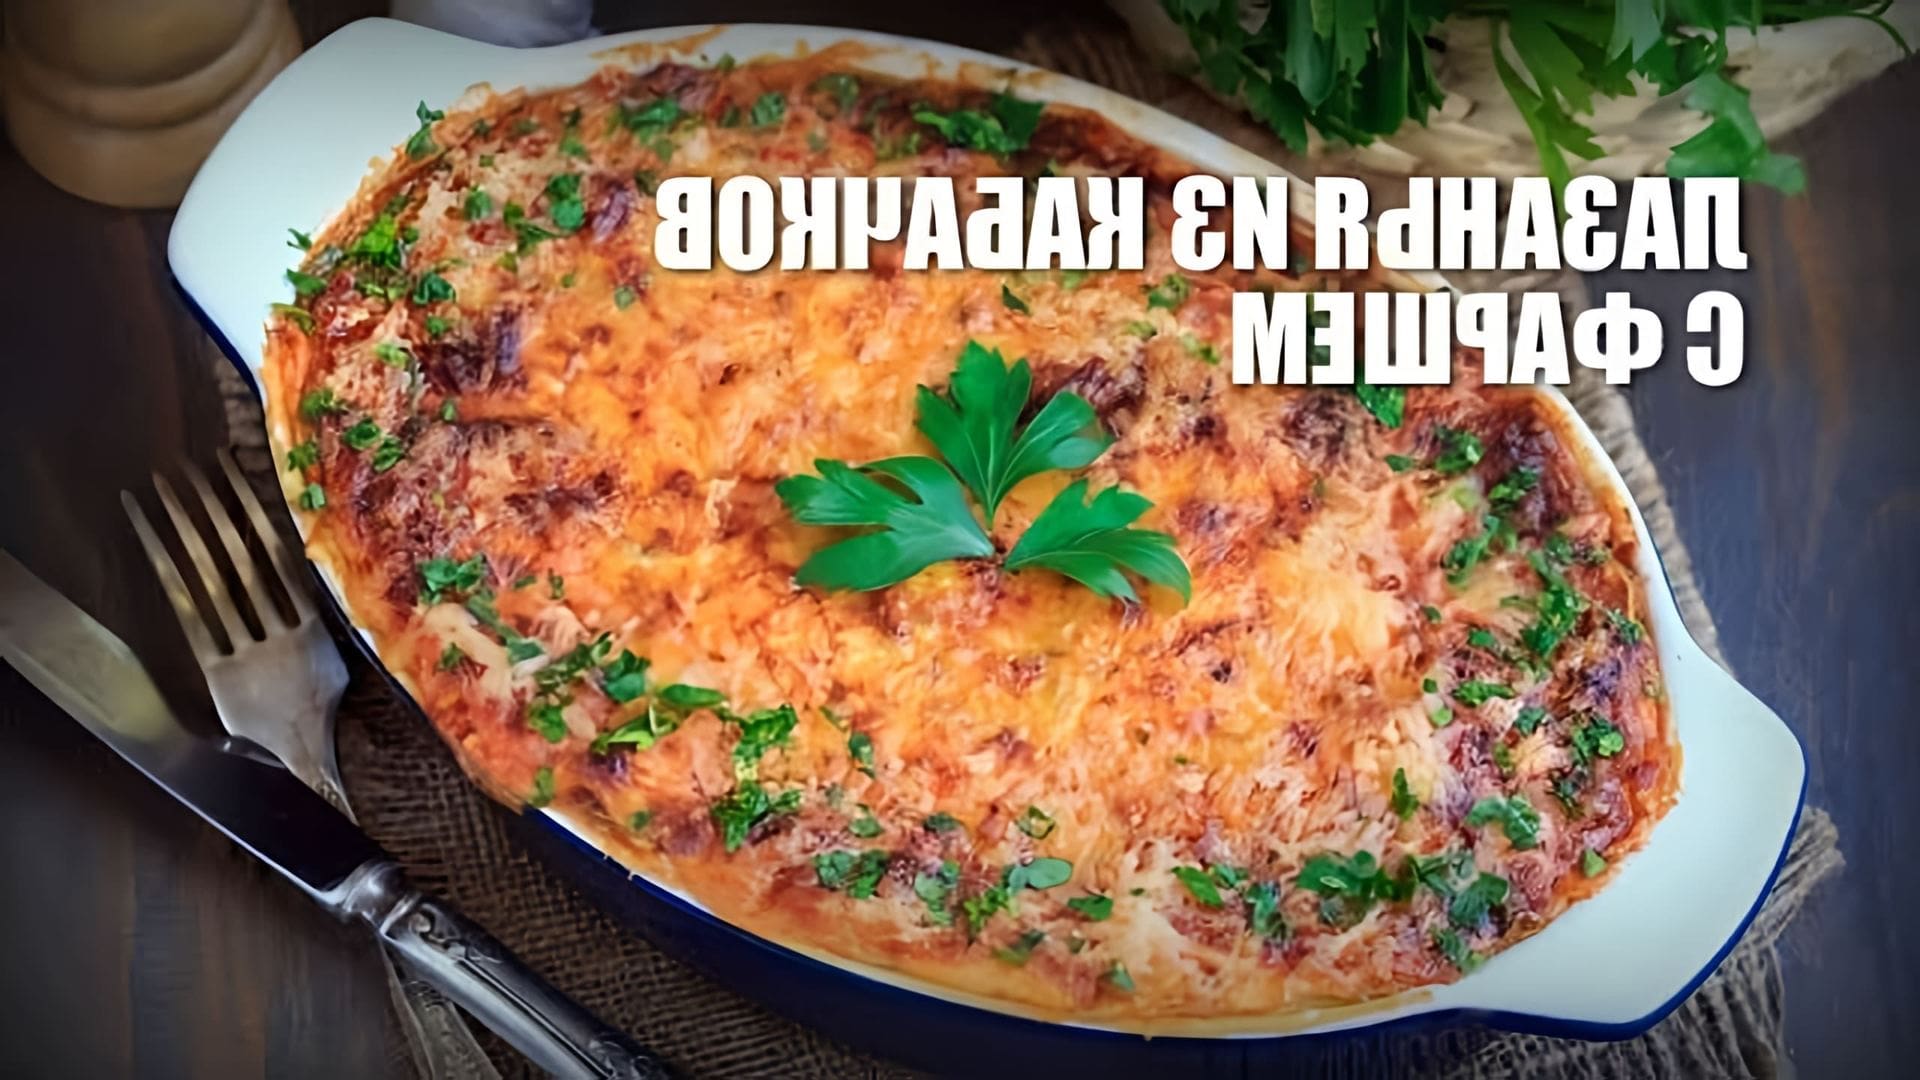 В этом видео демонстрируется рецепт приготовления лазаньи из кабачков